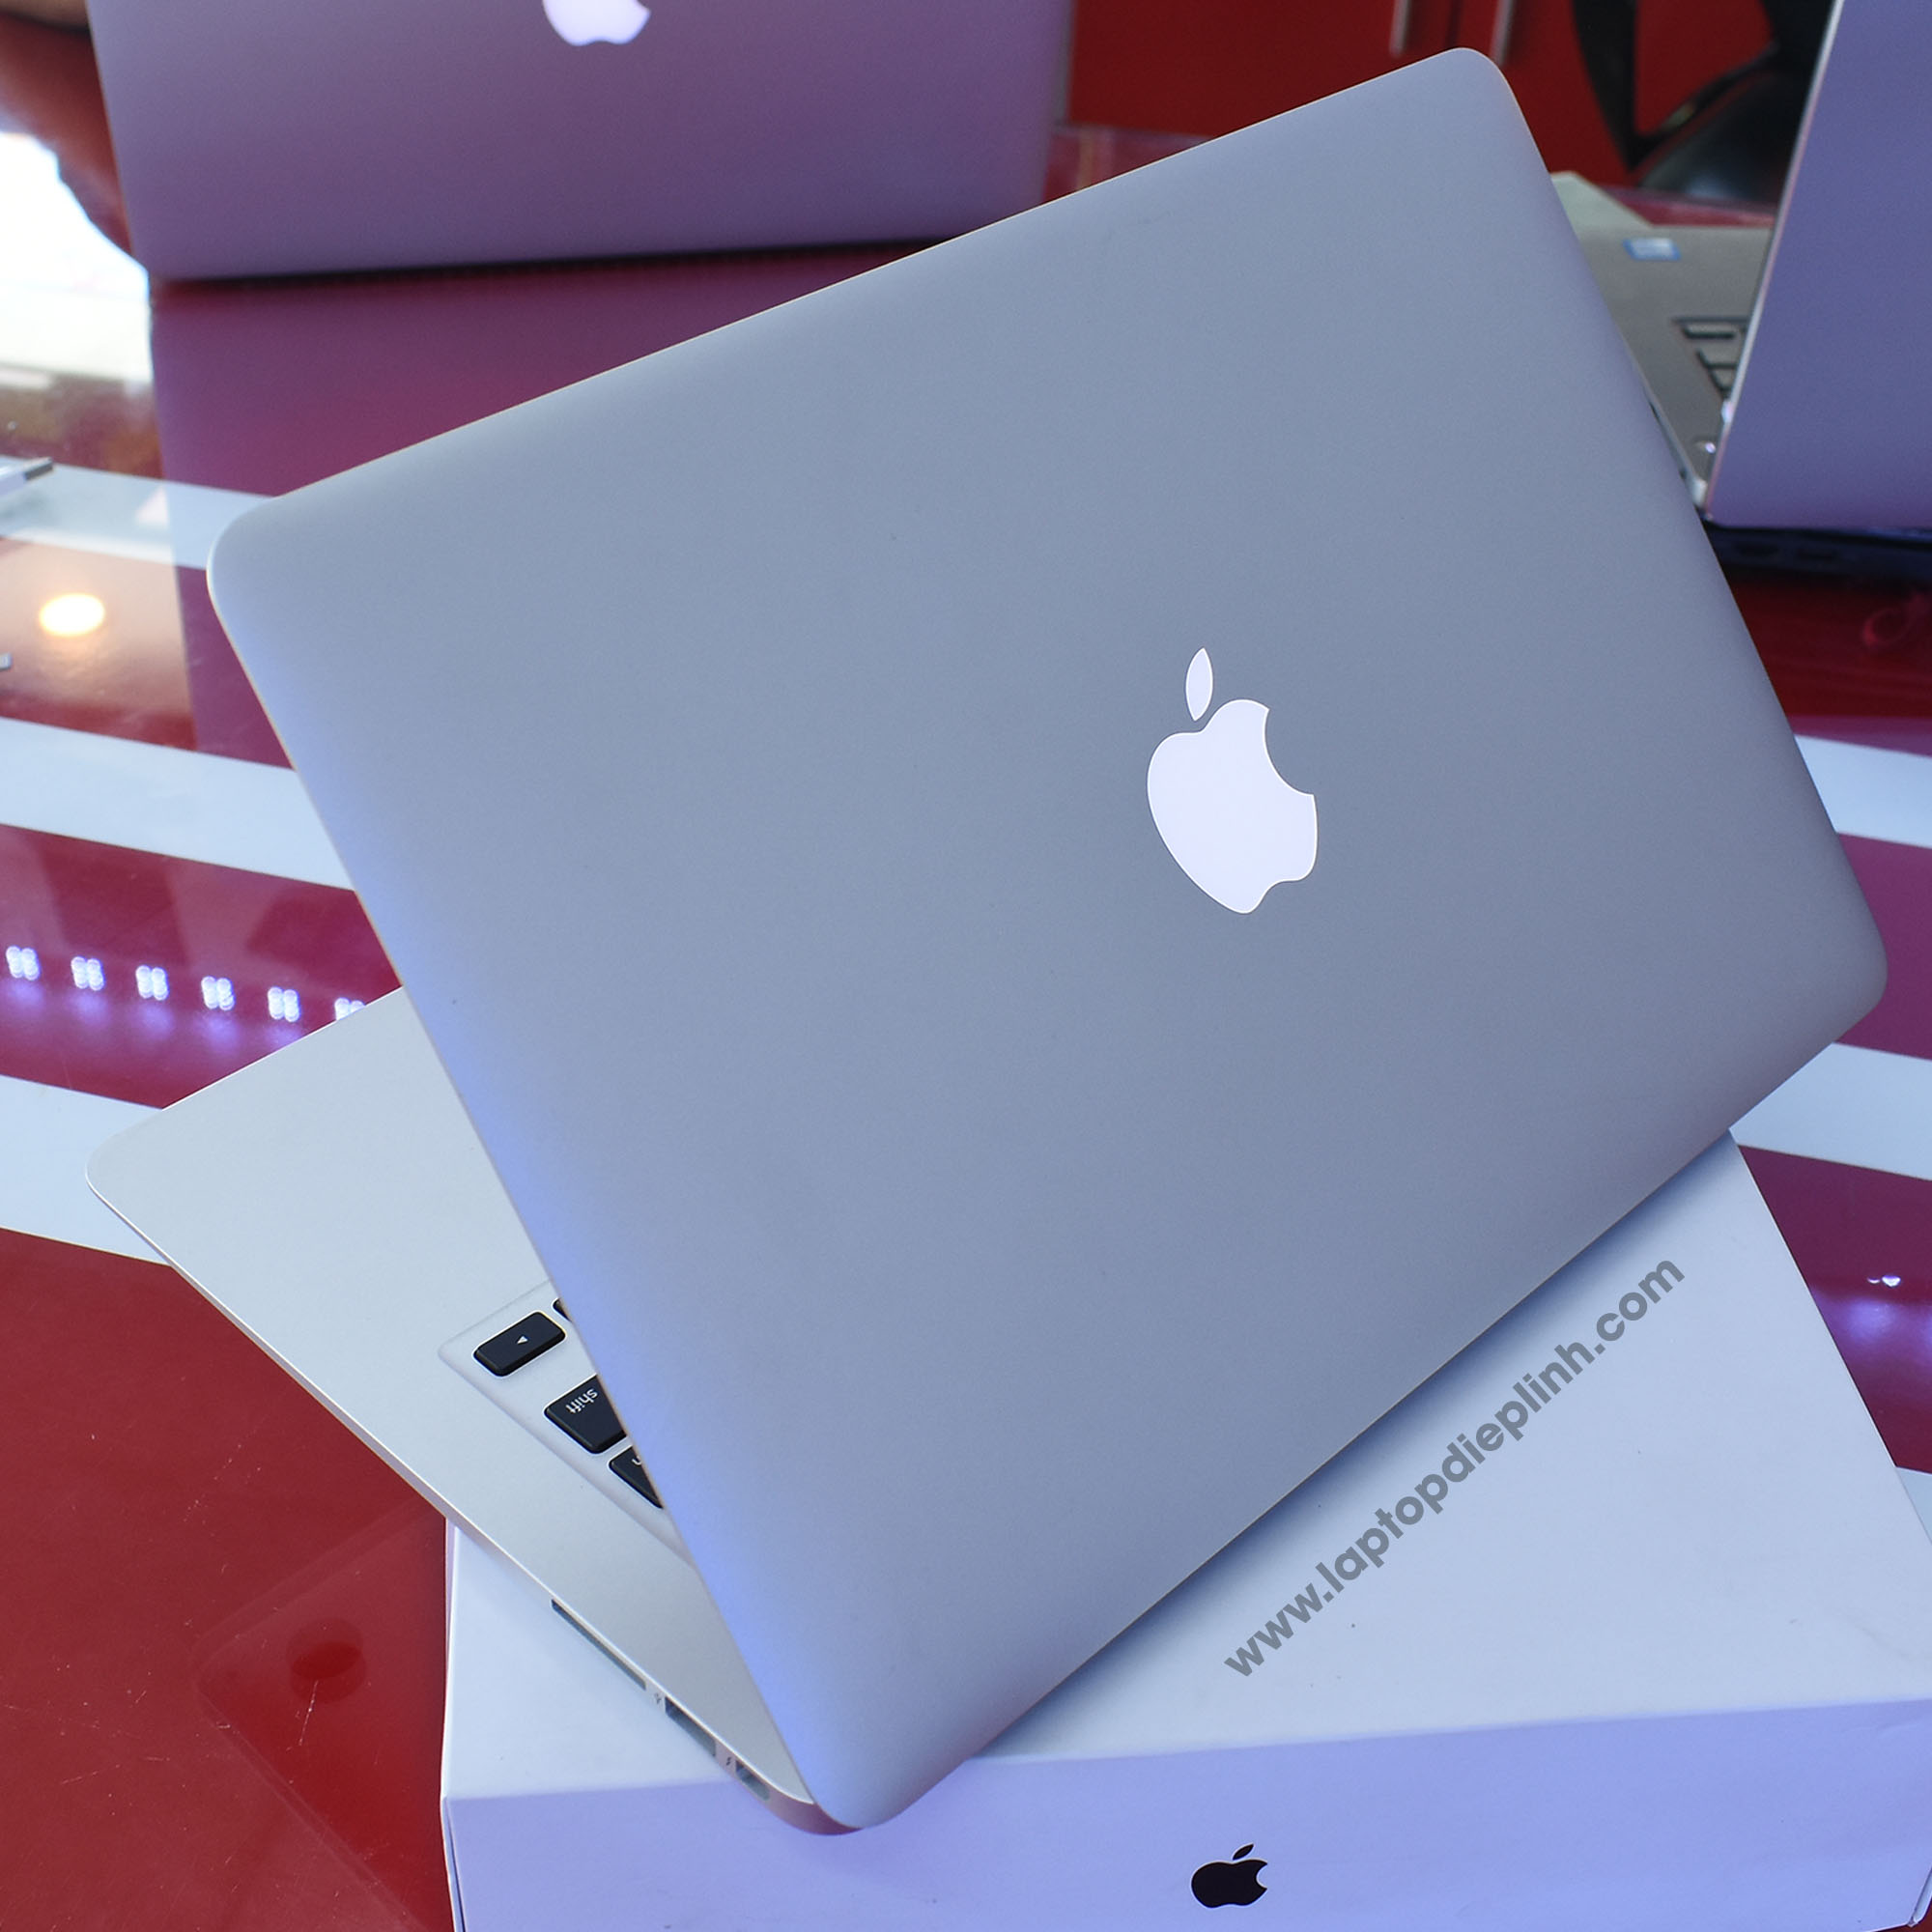 macbook air 2017 - laptop diep linh